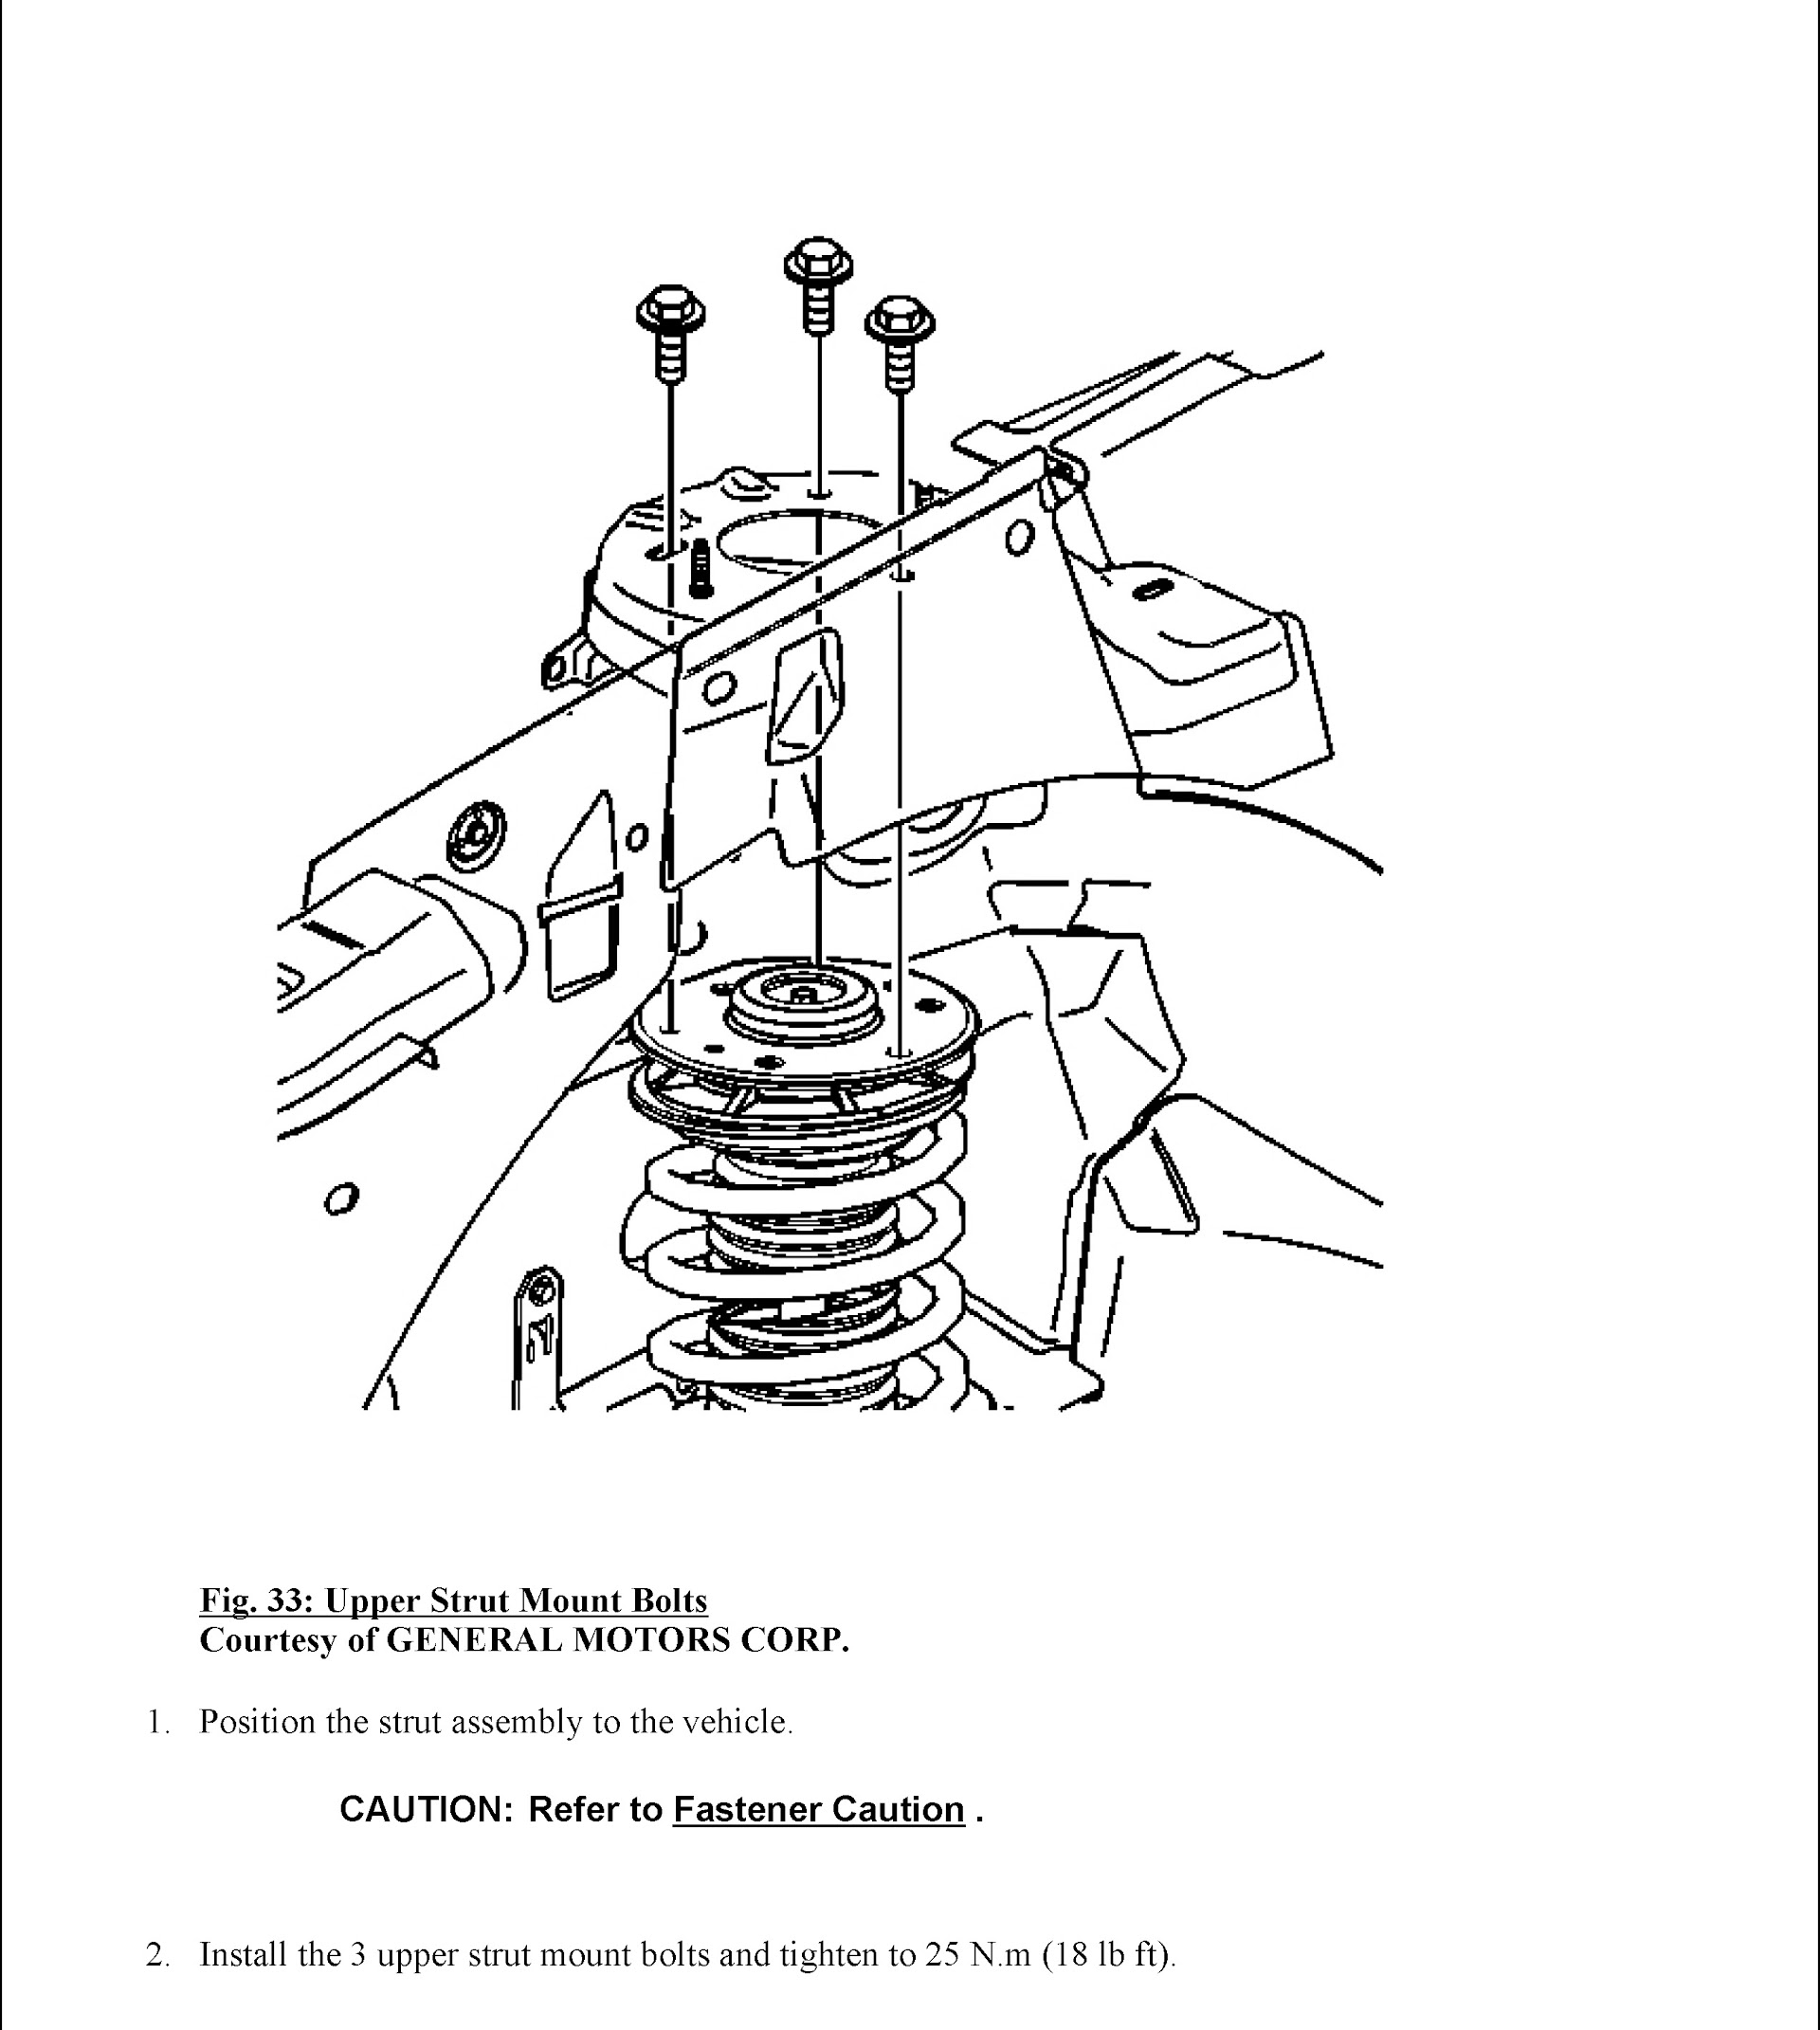 CONTENTS: 2010-2012 Chevrolet Equinox Repair Manual and GMC Terrain, Upper Strut Mount Bolts